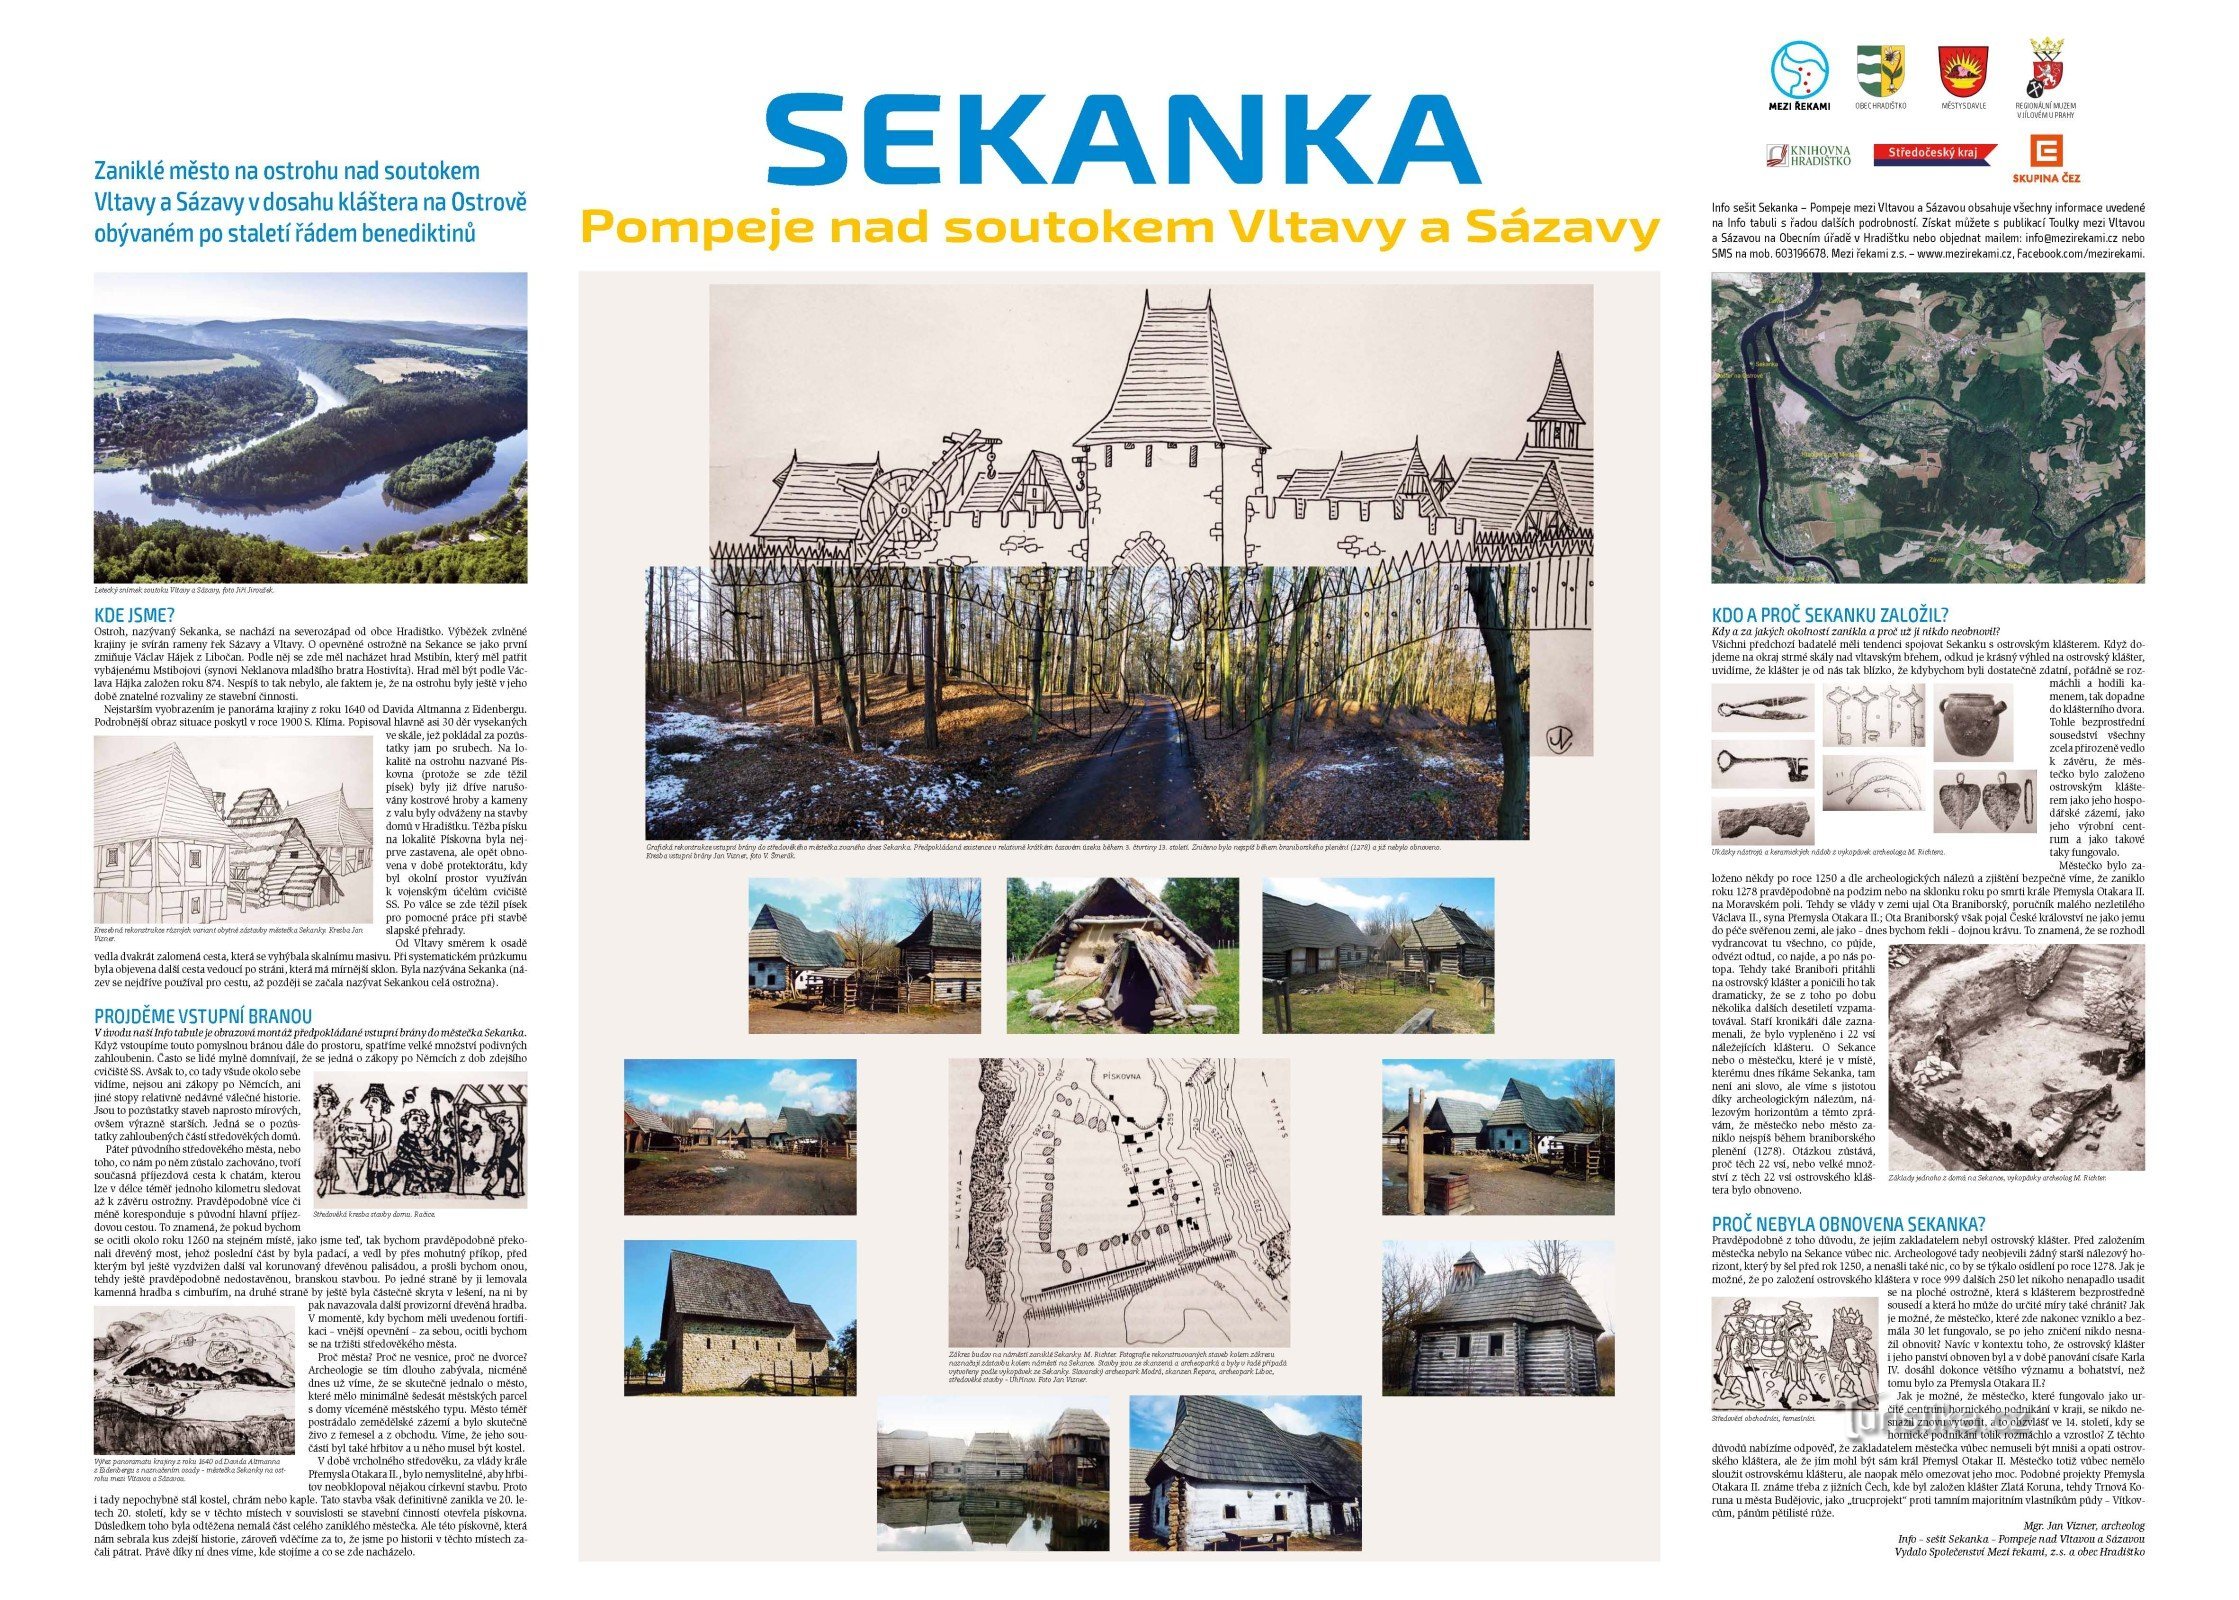 Pannello informativo con la storia di Sekanka